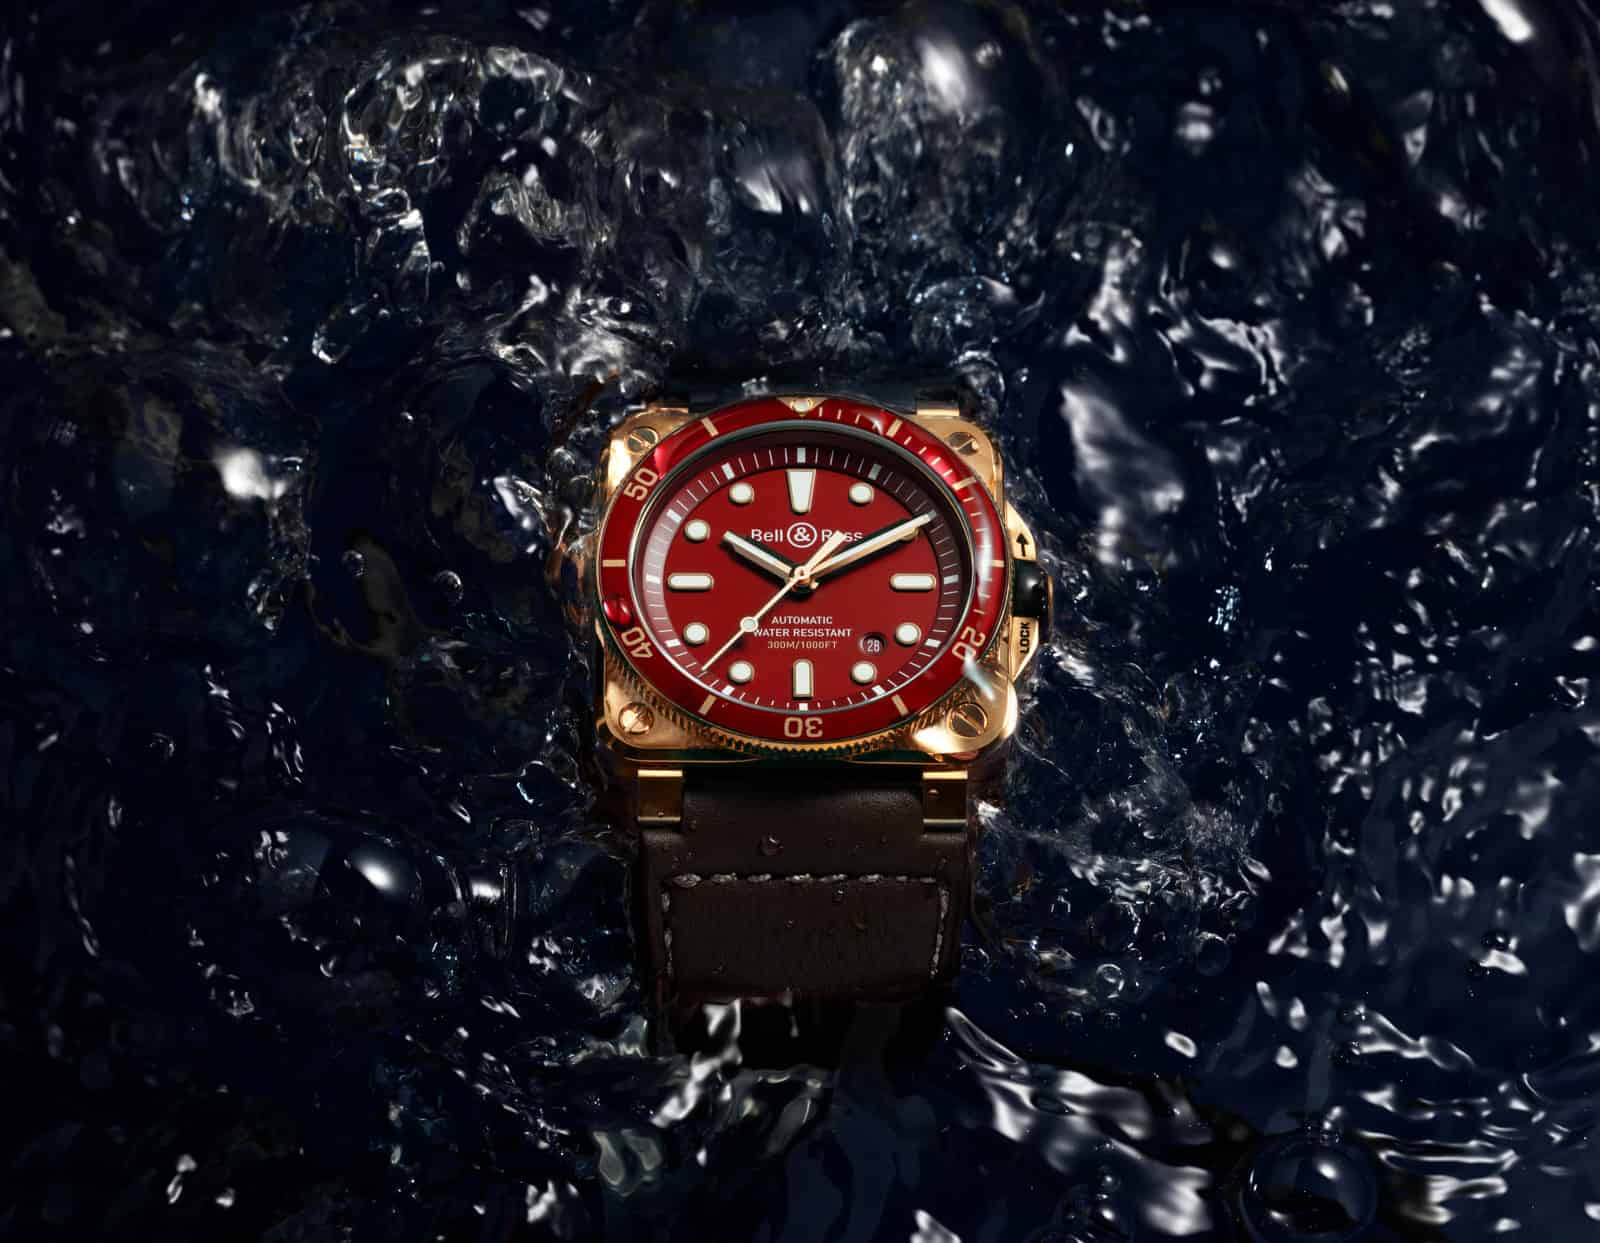 Gli orologi subacquei Bell & Ross offrono la soluzione perfetta quando si esplora un ambiente affascinante e pericoloso